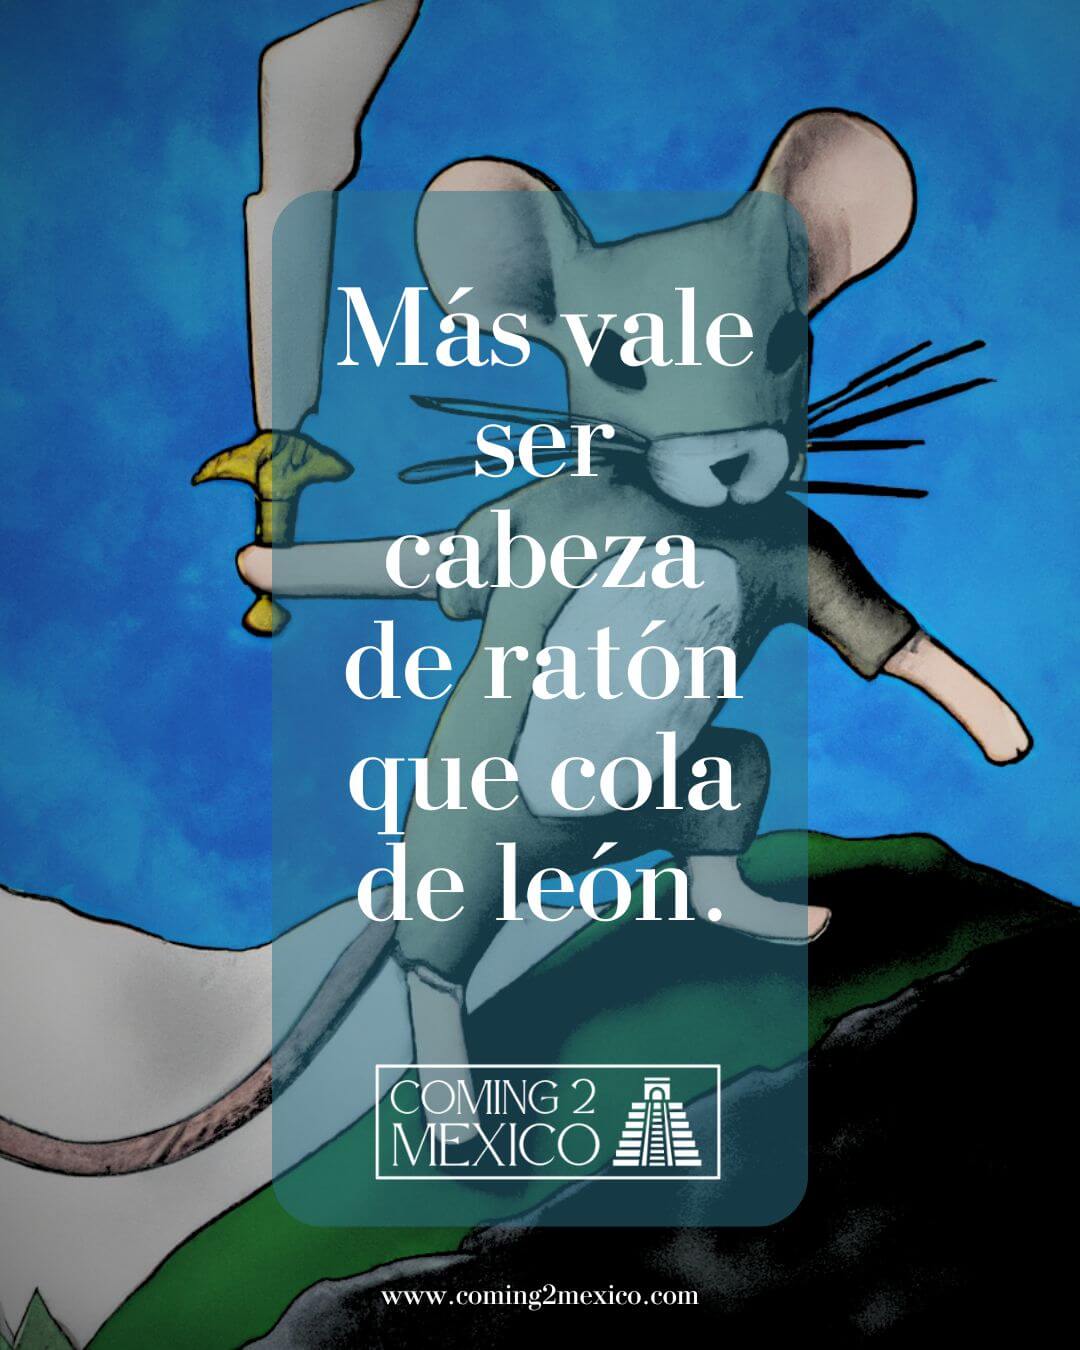 "Más vale ser cabeza de ratón que cola de león." - Better to be the head of a mouse than the tail of a lion.